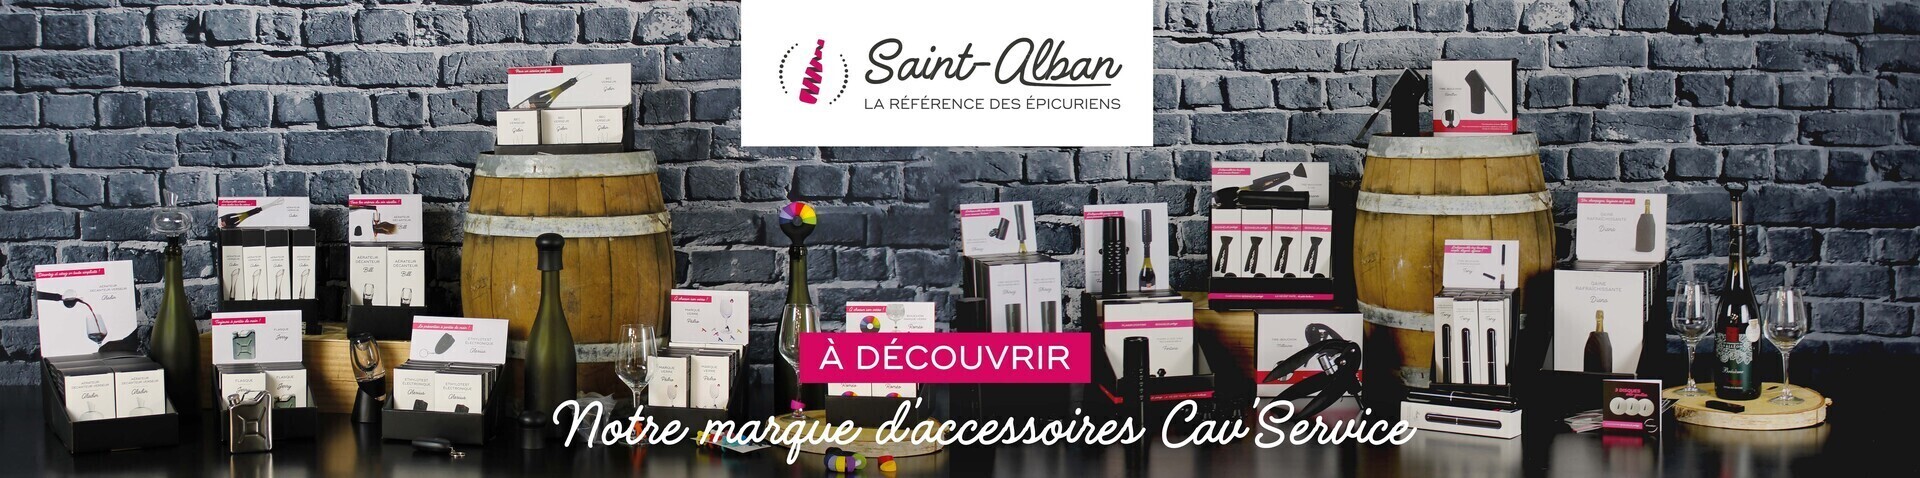 Bannière présentation marque Saint-Alban